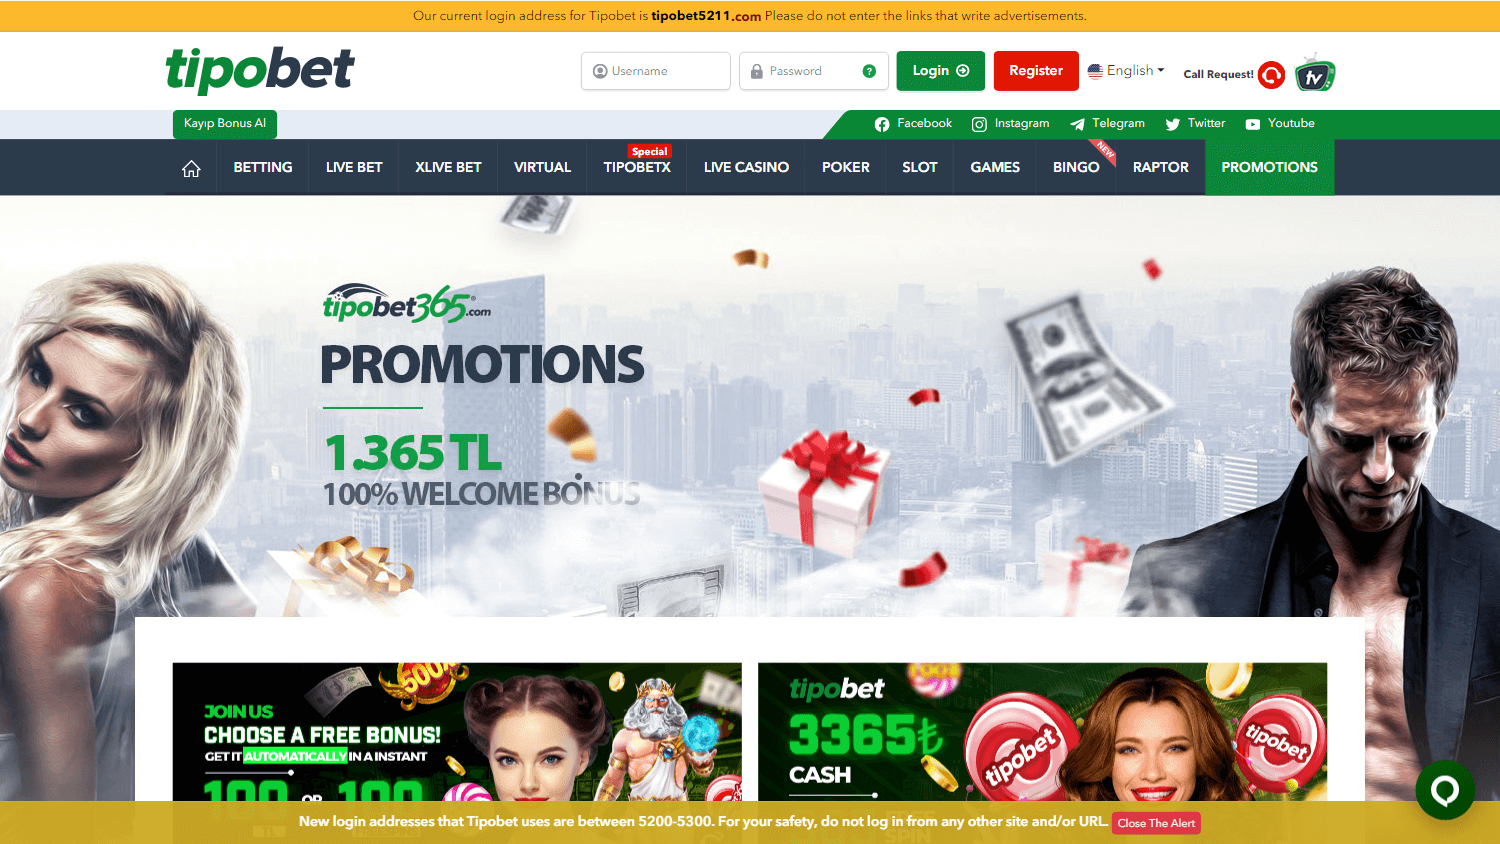 tipobet365_casino_promotions_desktop